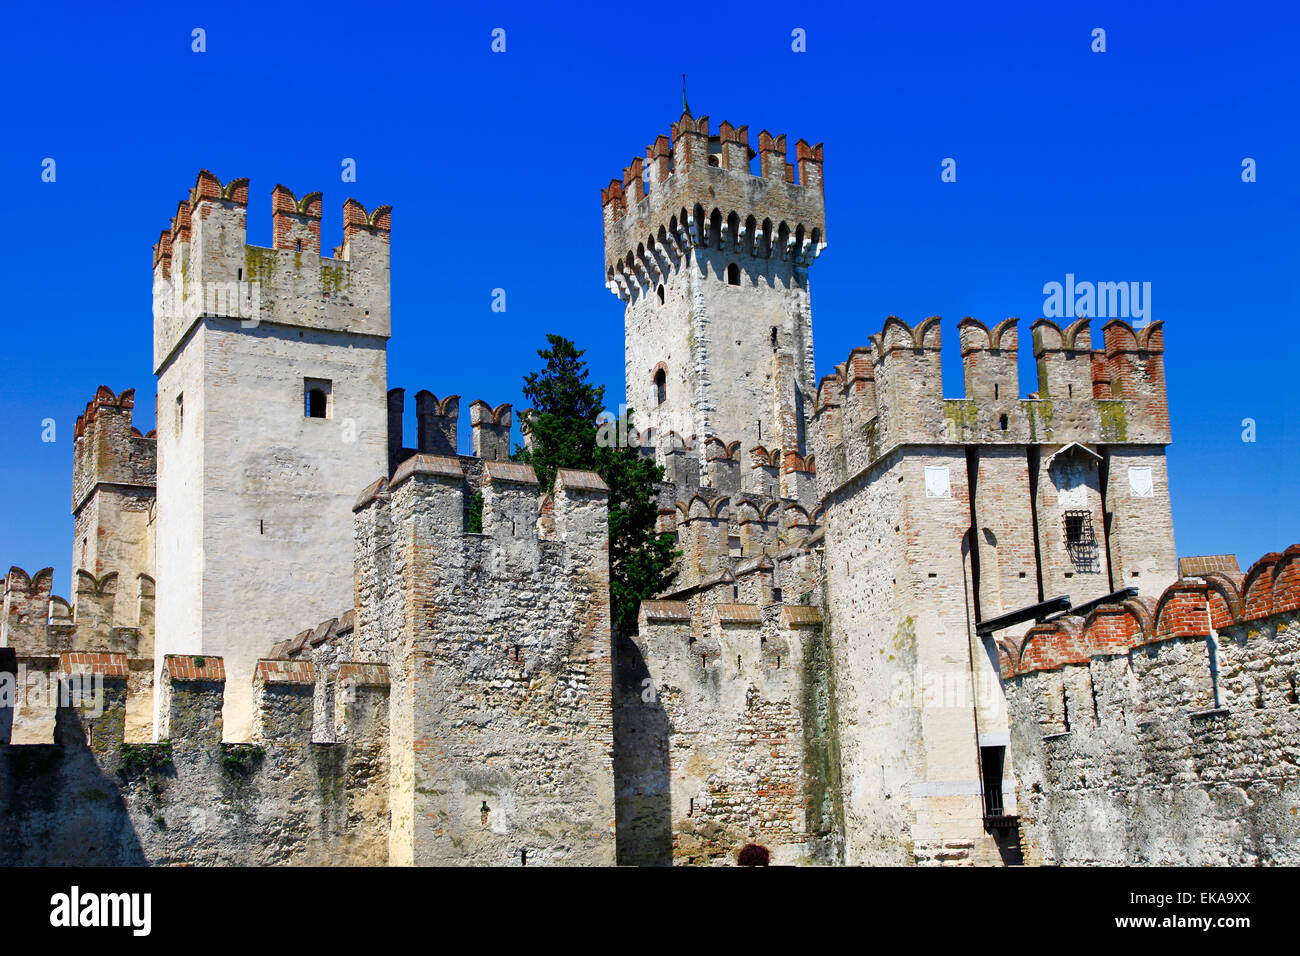 Scagliero castle in Sirmione. Lago di Garda. Northen Italy Stock Photo